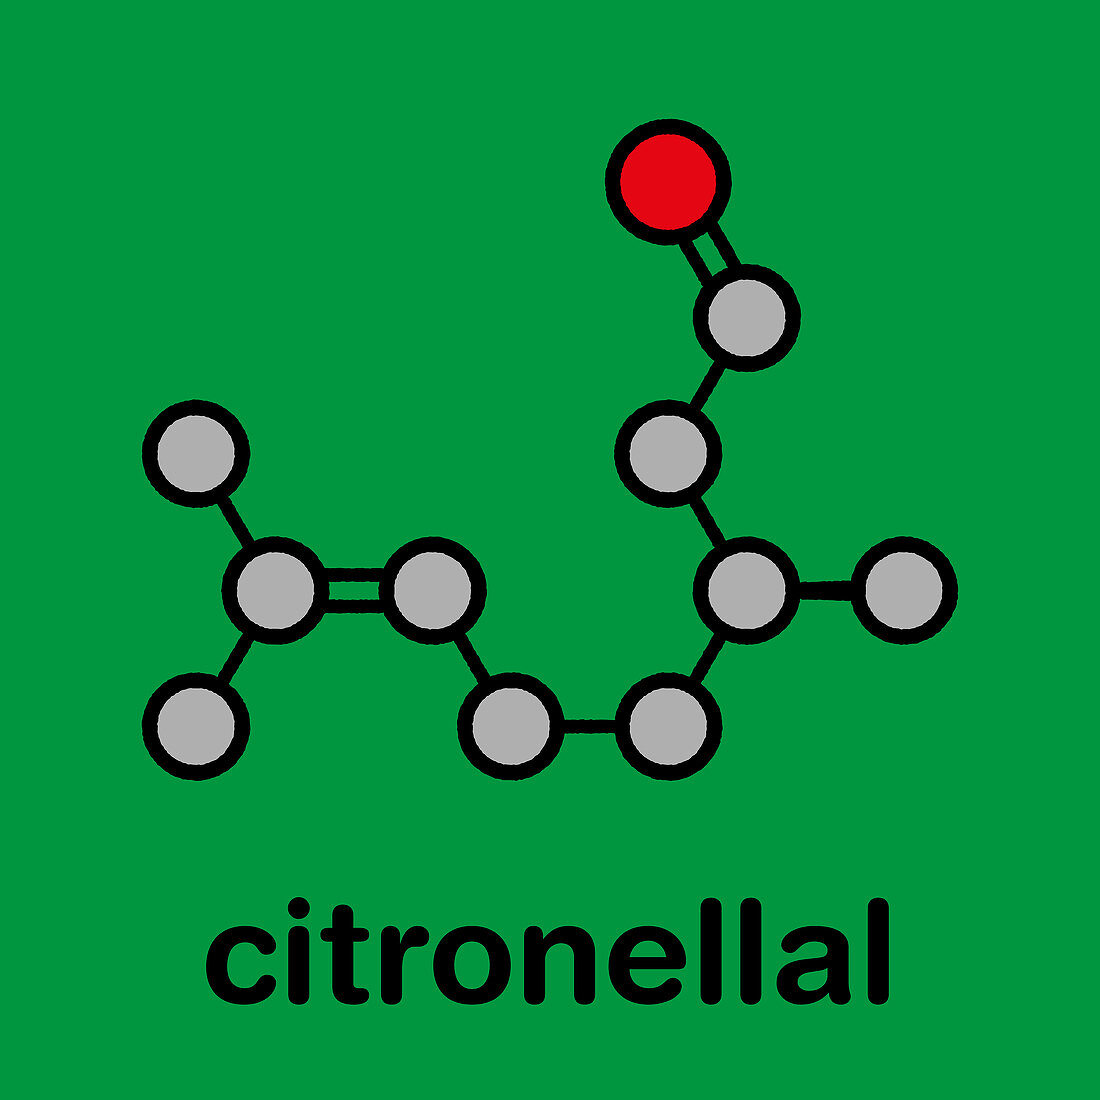 Citronellal citronella oil molecule, illustration